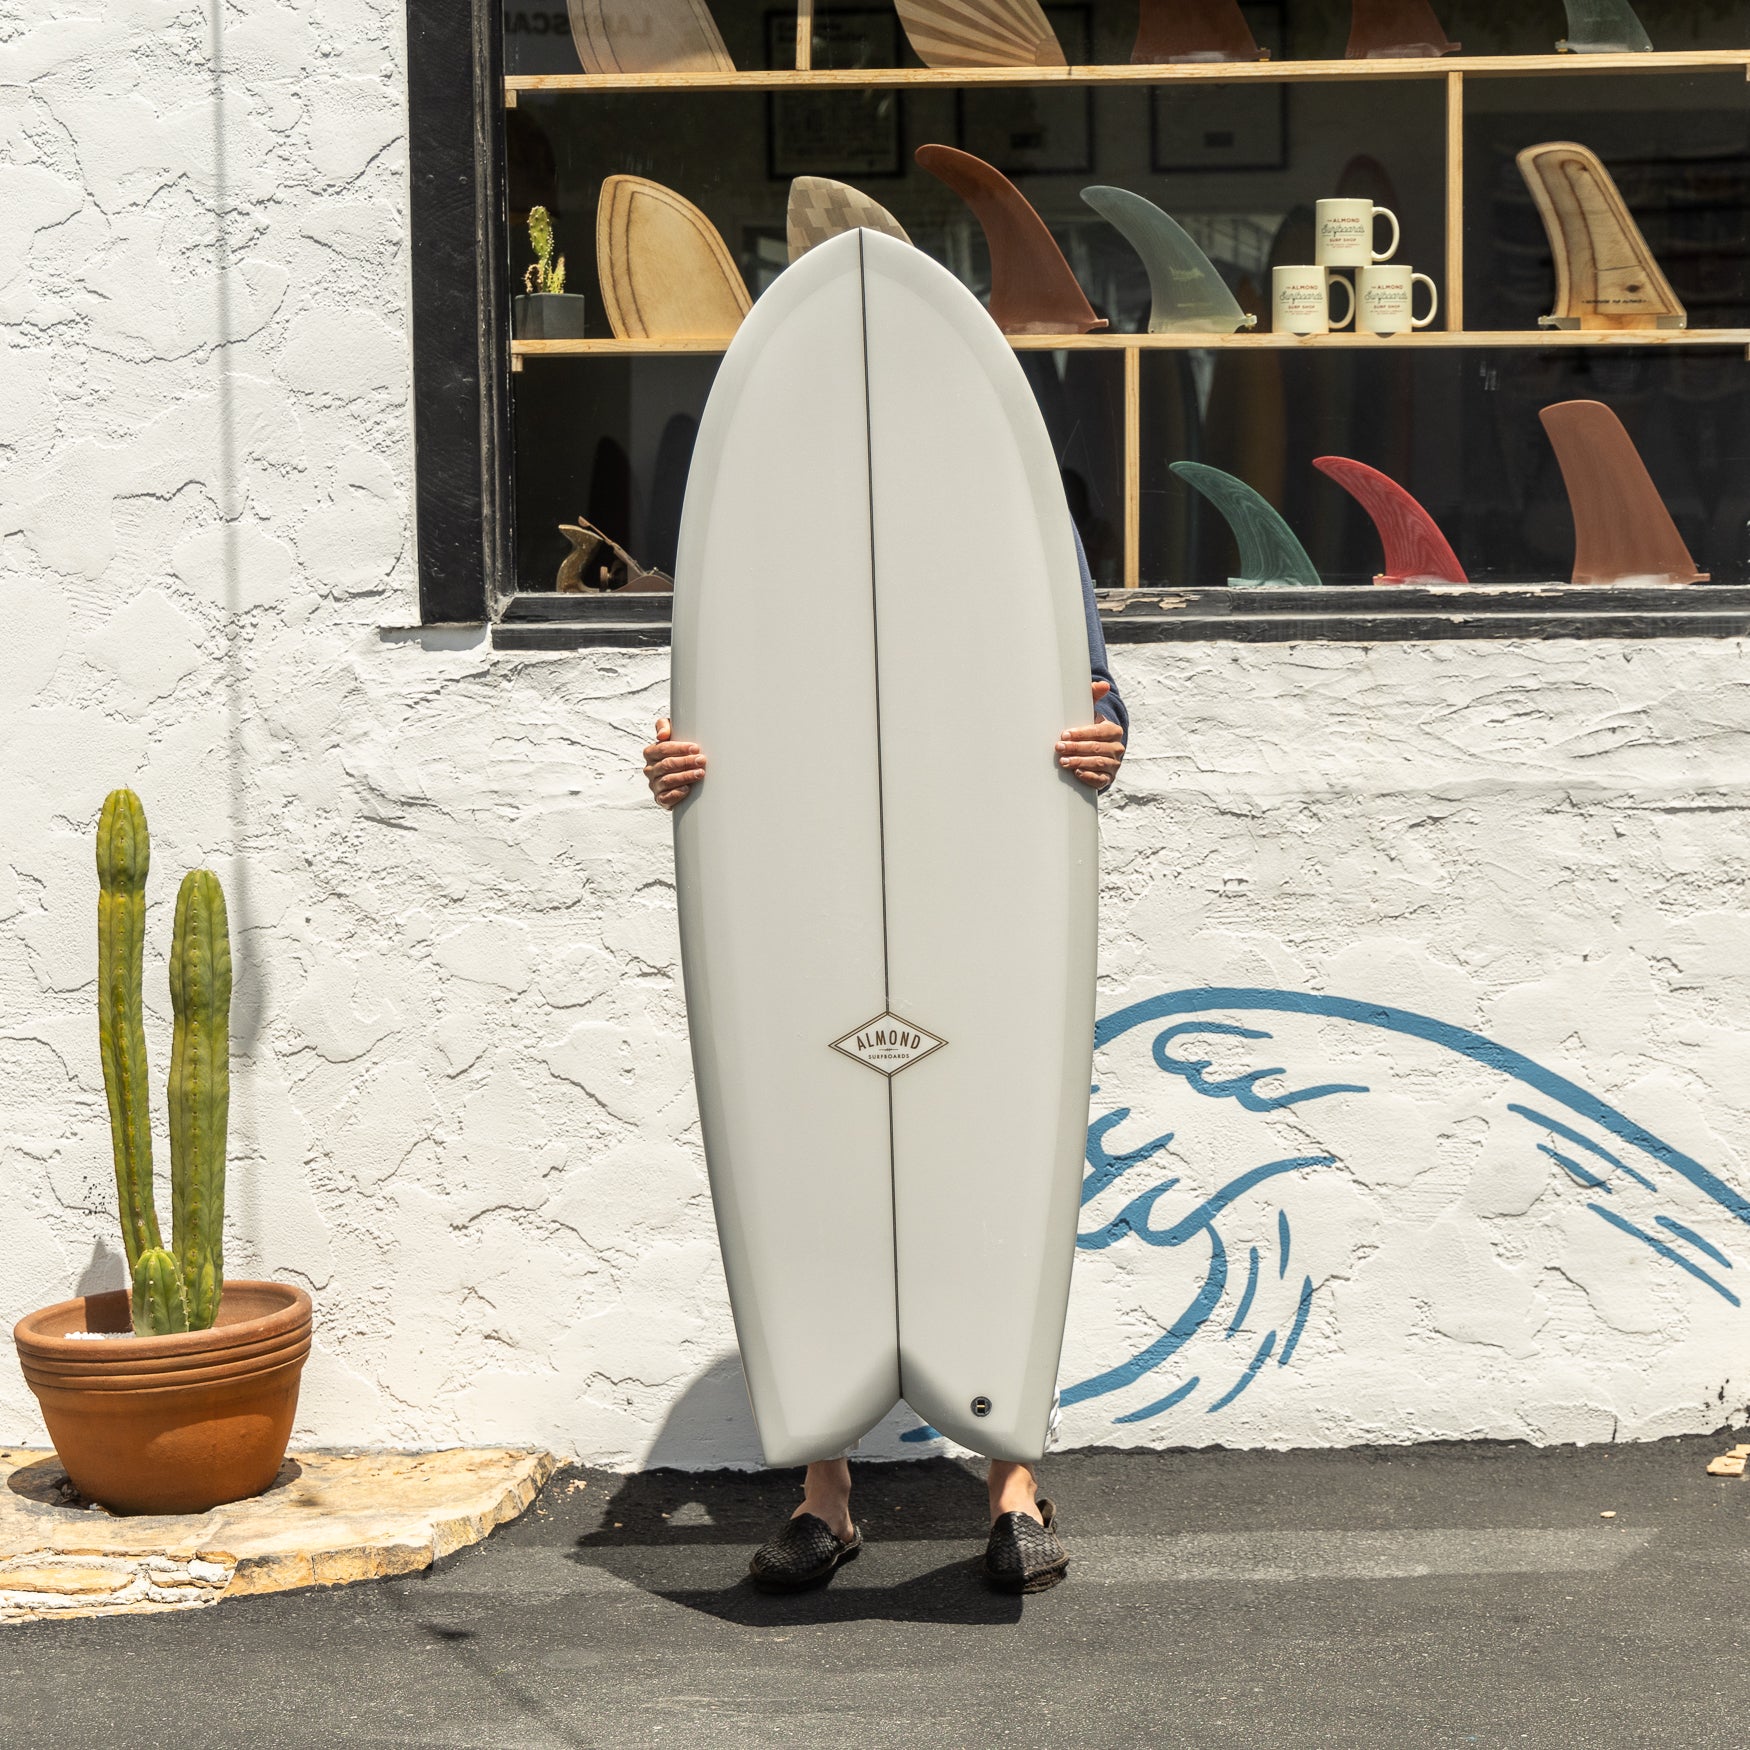 Own An Original Almond Surfboard | Almond Surfboards & Designs